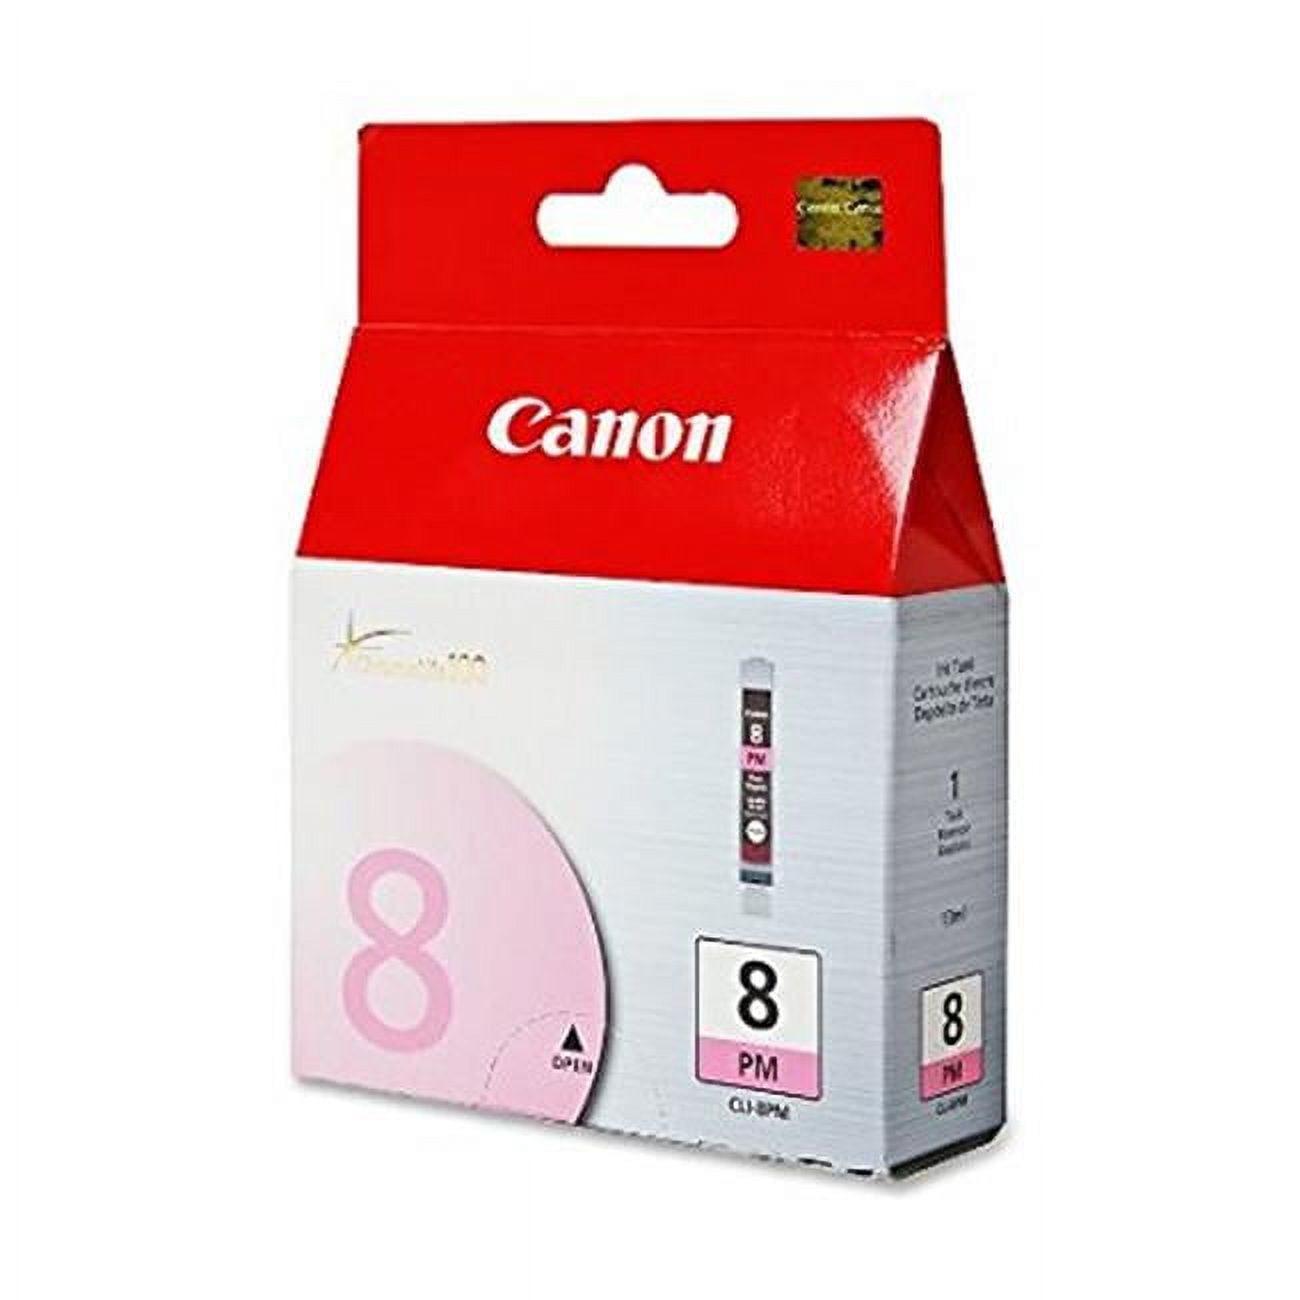 Picture of Canon CNMCLI8PM CLI-8PM Photo Magenta Ink Tank